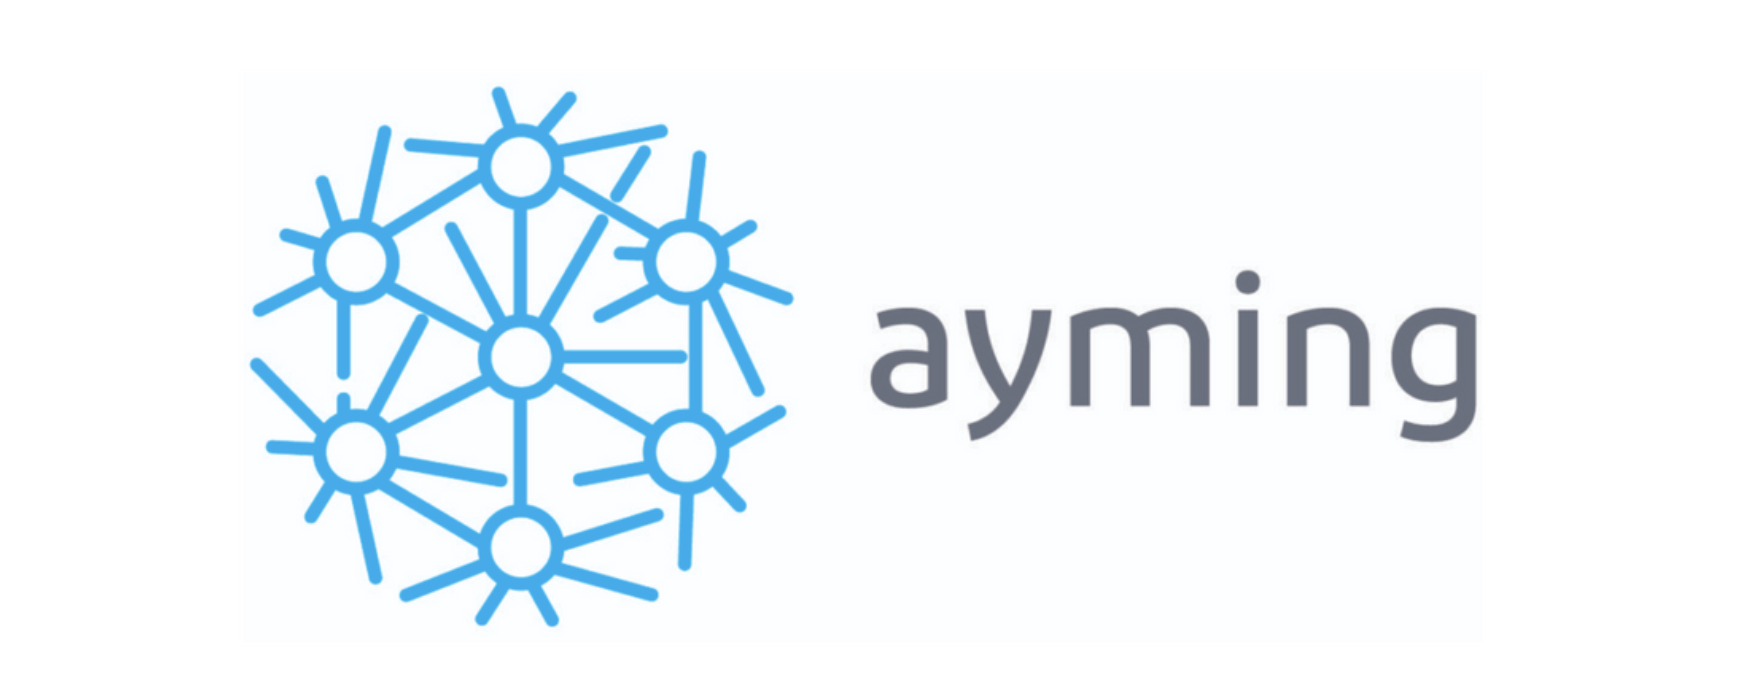 ayming-logo